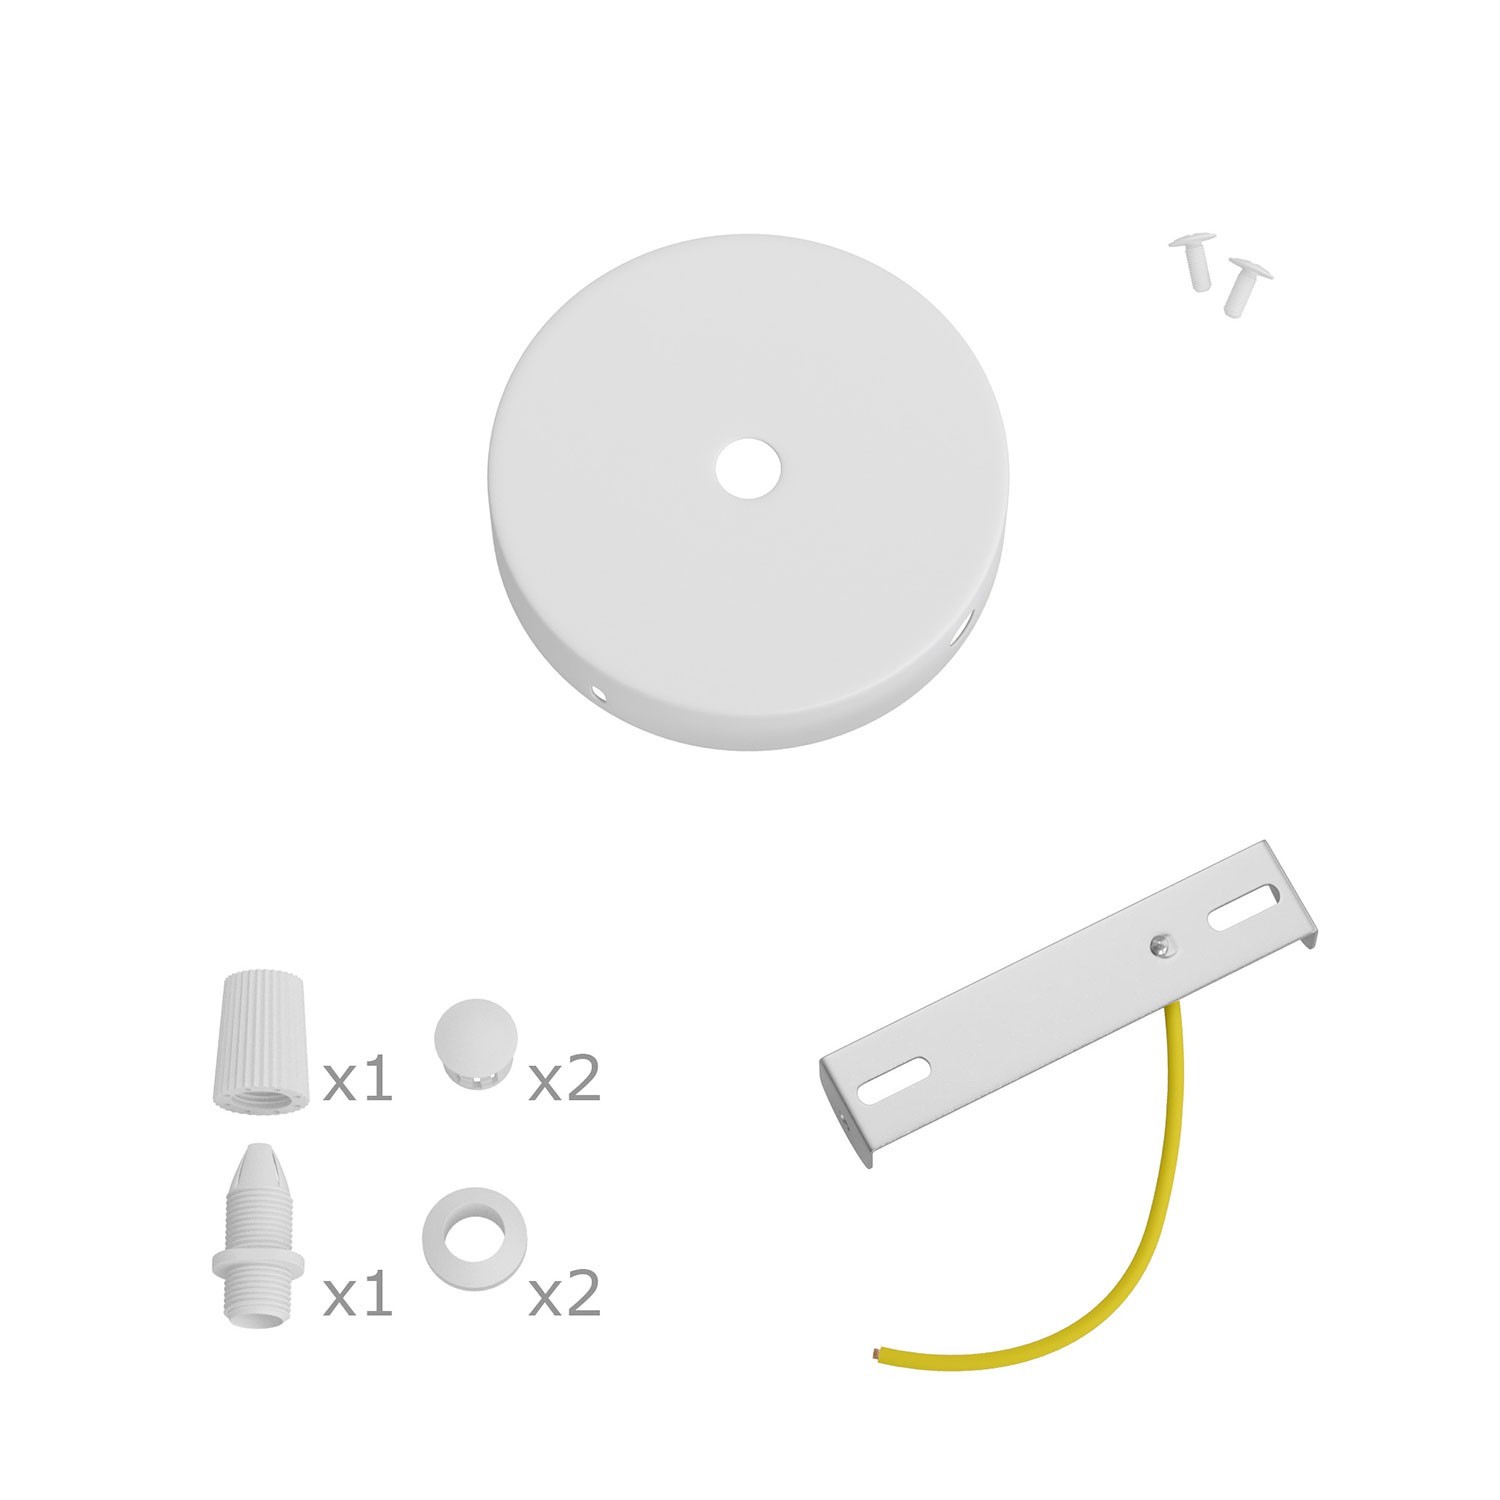 Kit runder Mini Lampenbaldachin aus Metall mit 1 zentralen Loch und 2 Seitenlöchern